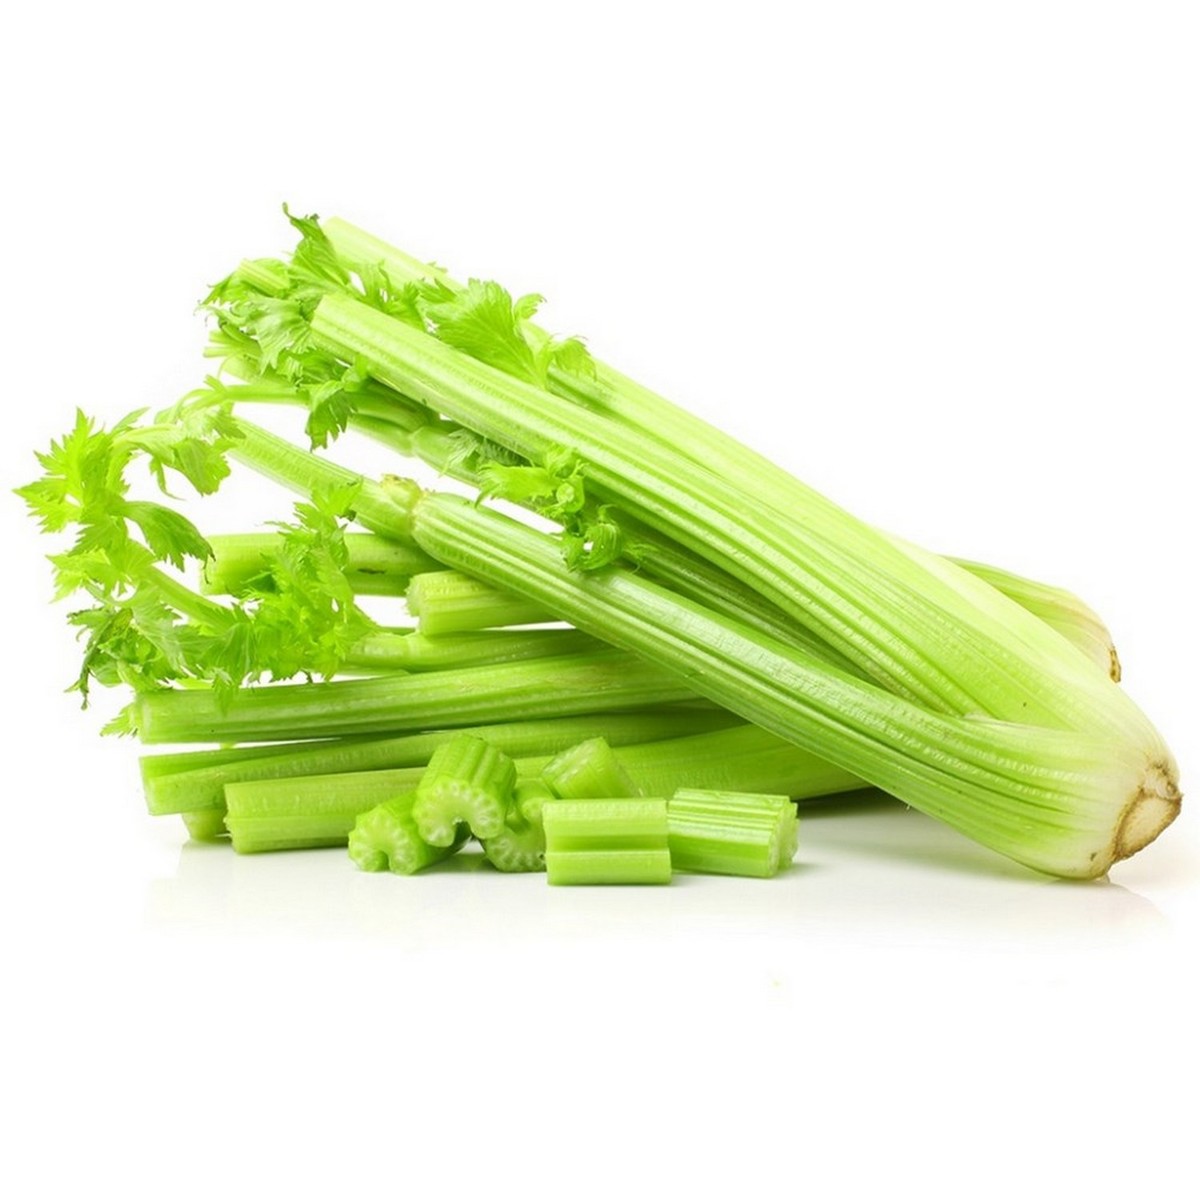 اشتري قم بشراء Celery USA 500g Online at Best Price من الموقع - من لولو هايبر ماركت منكه الخضروات في السعودية